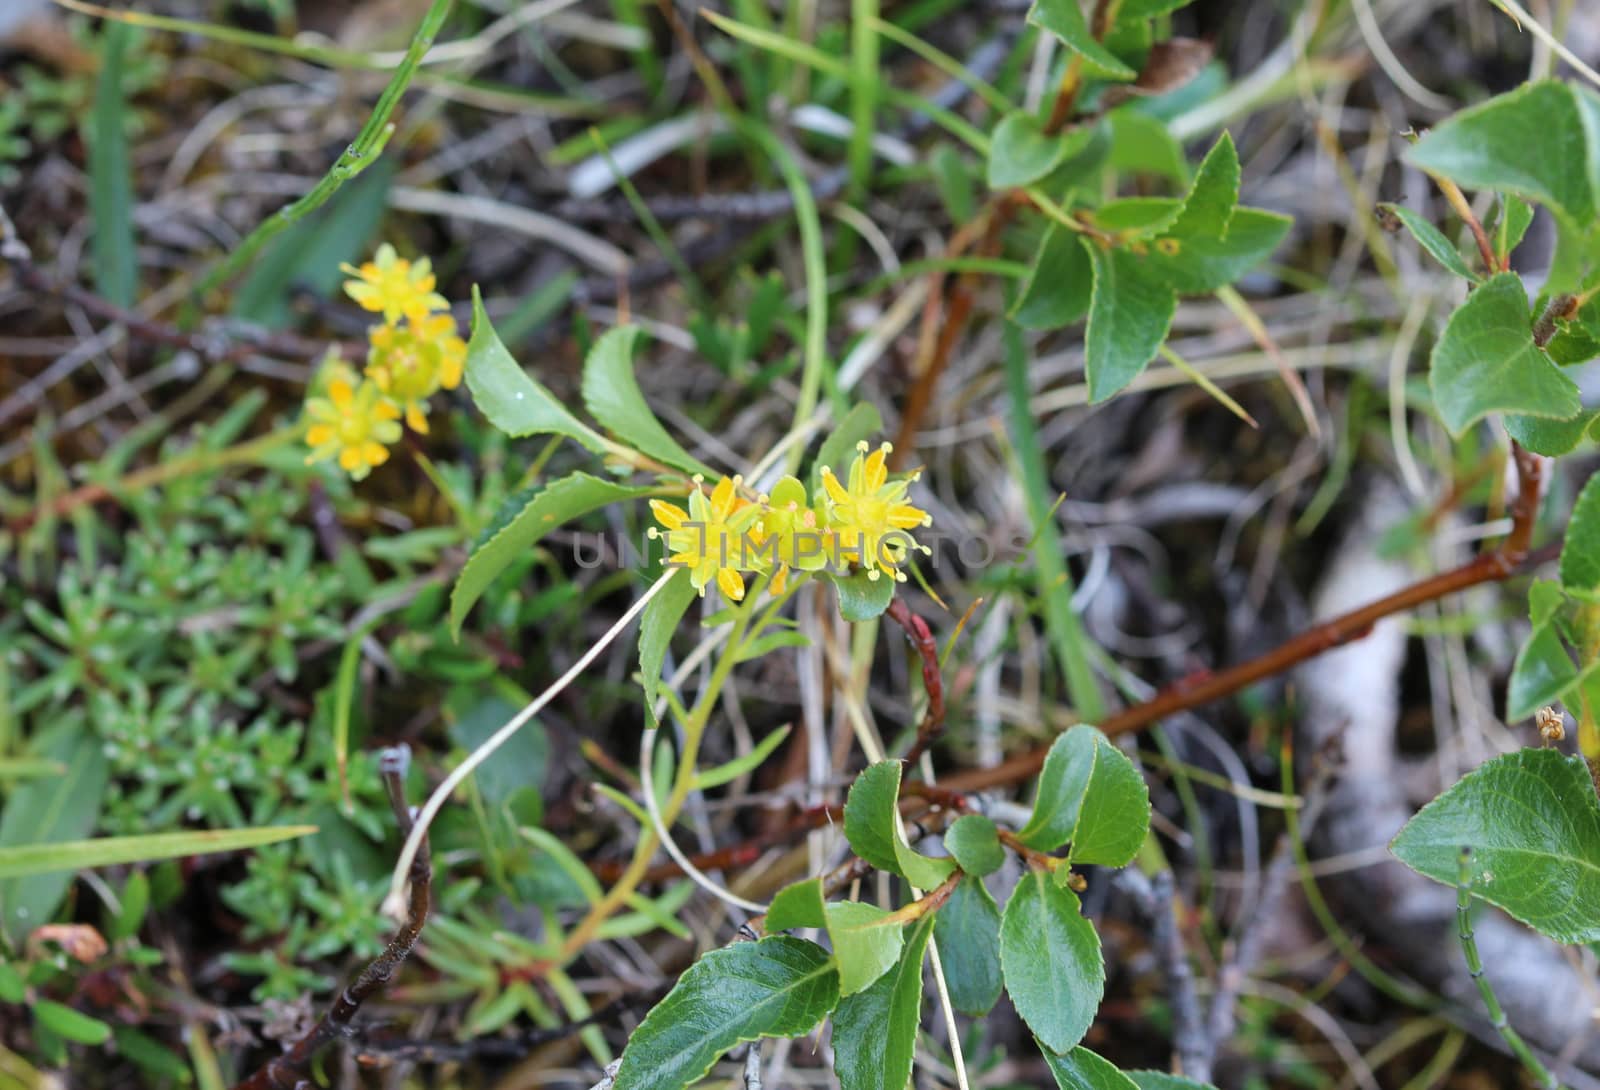 Saxifraga aizoides flower, also known as yellow mountain saxifrage or yellow saxifrage by michaelmeijer